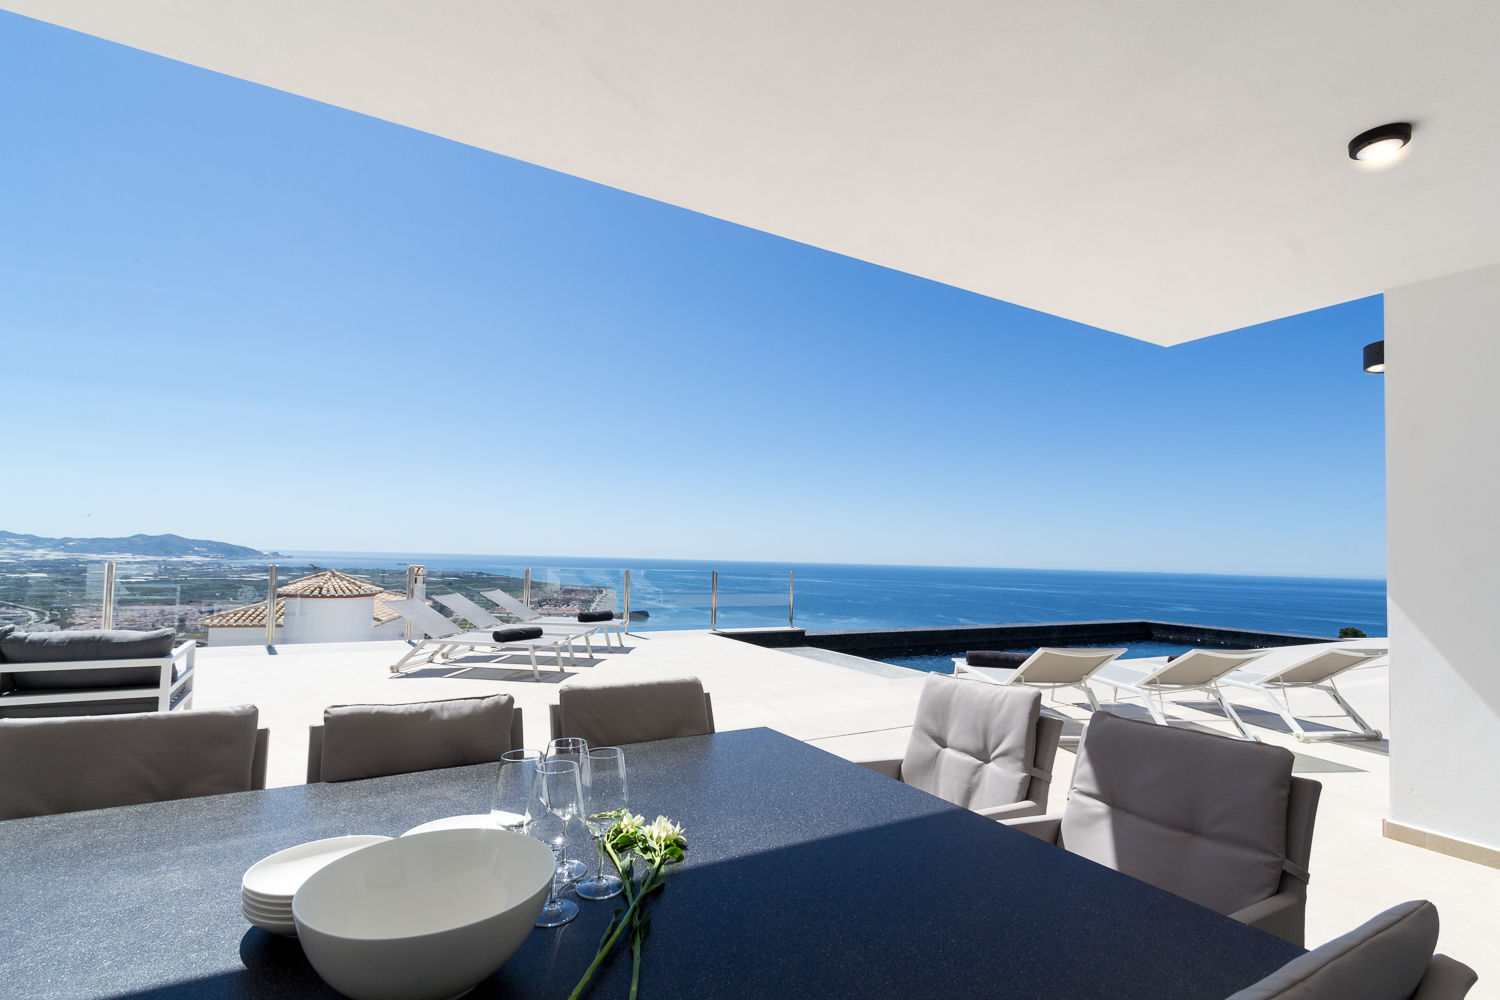 Comedor en terraza Home & Haus | Home Staging & Fotografía Balcones y terrazas de estilo minimalista homestaging,fotografía,vacaciones,azul,terraza,comedor exterior,espacios abiertos,lujo